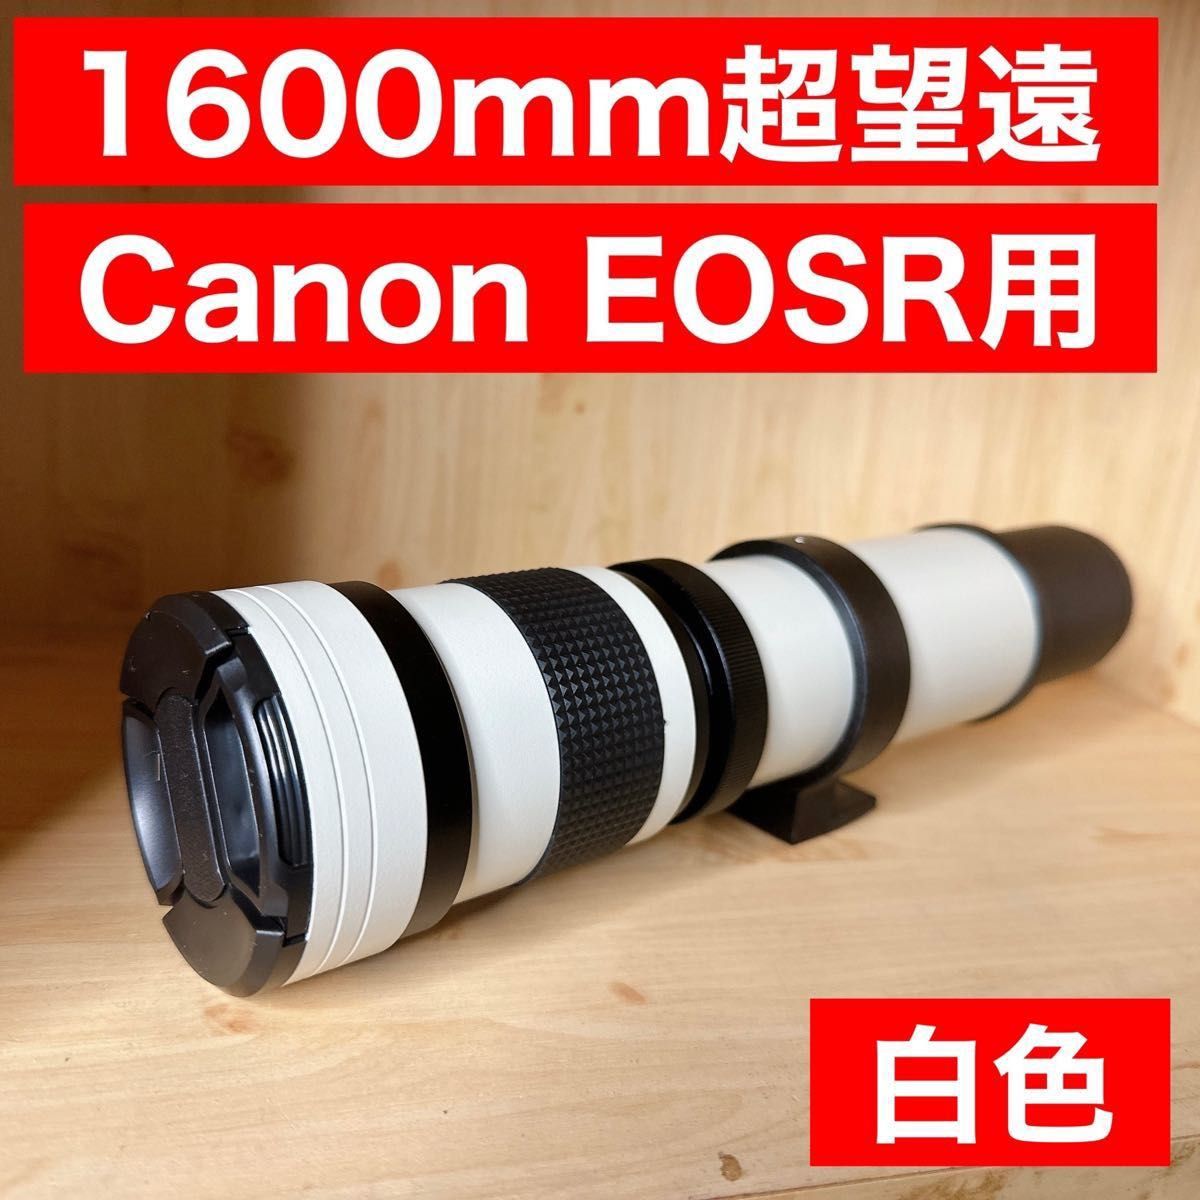 驚異の1600mm Canon EOSRシリーズ用 超望遠レンズ これは凄い 美品